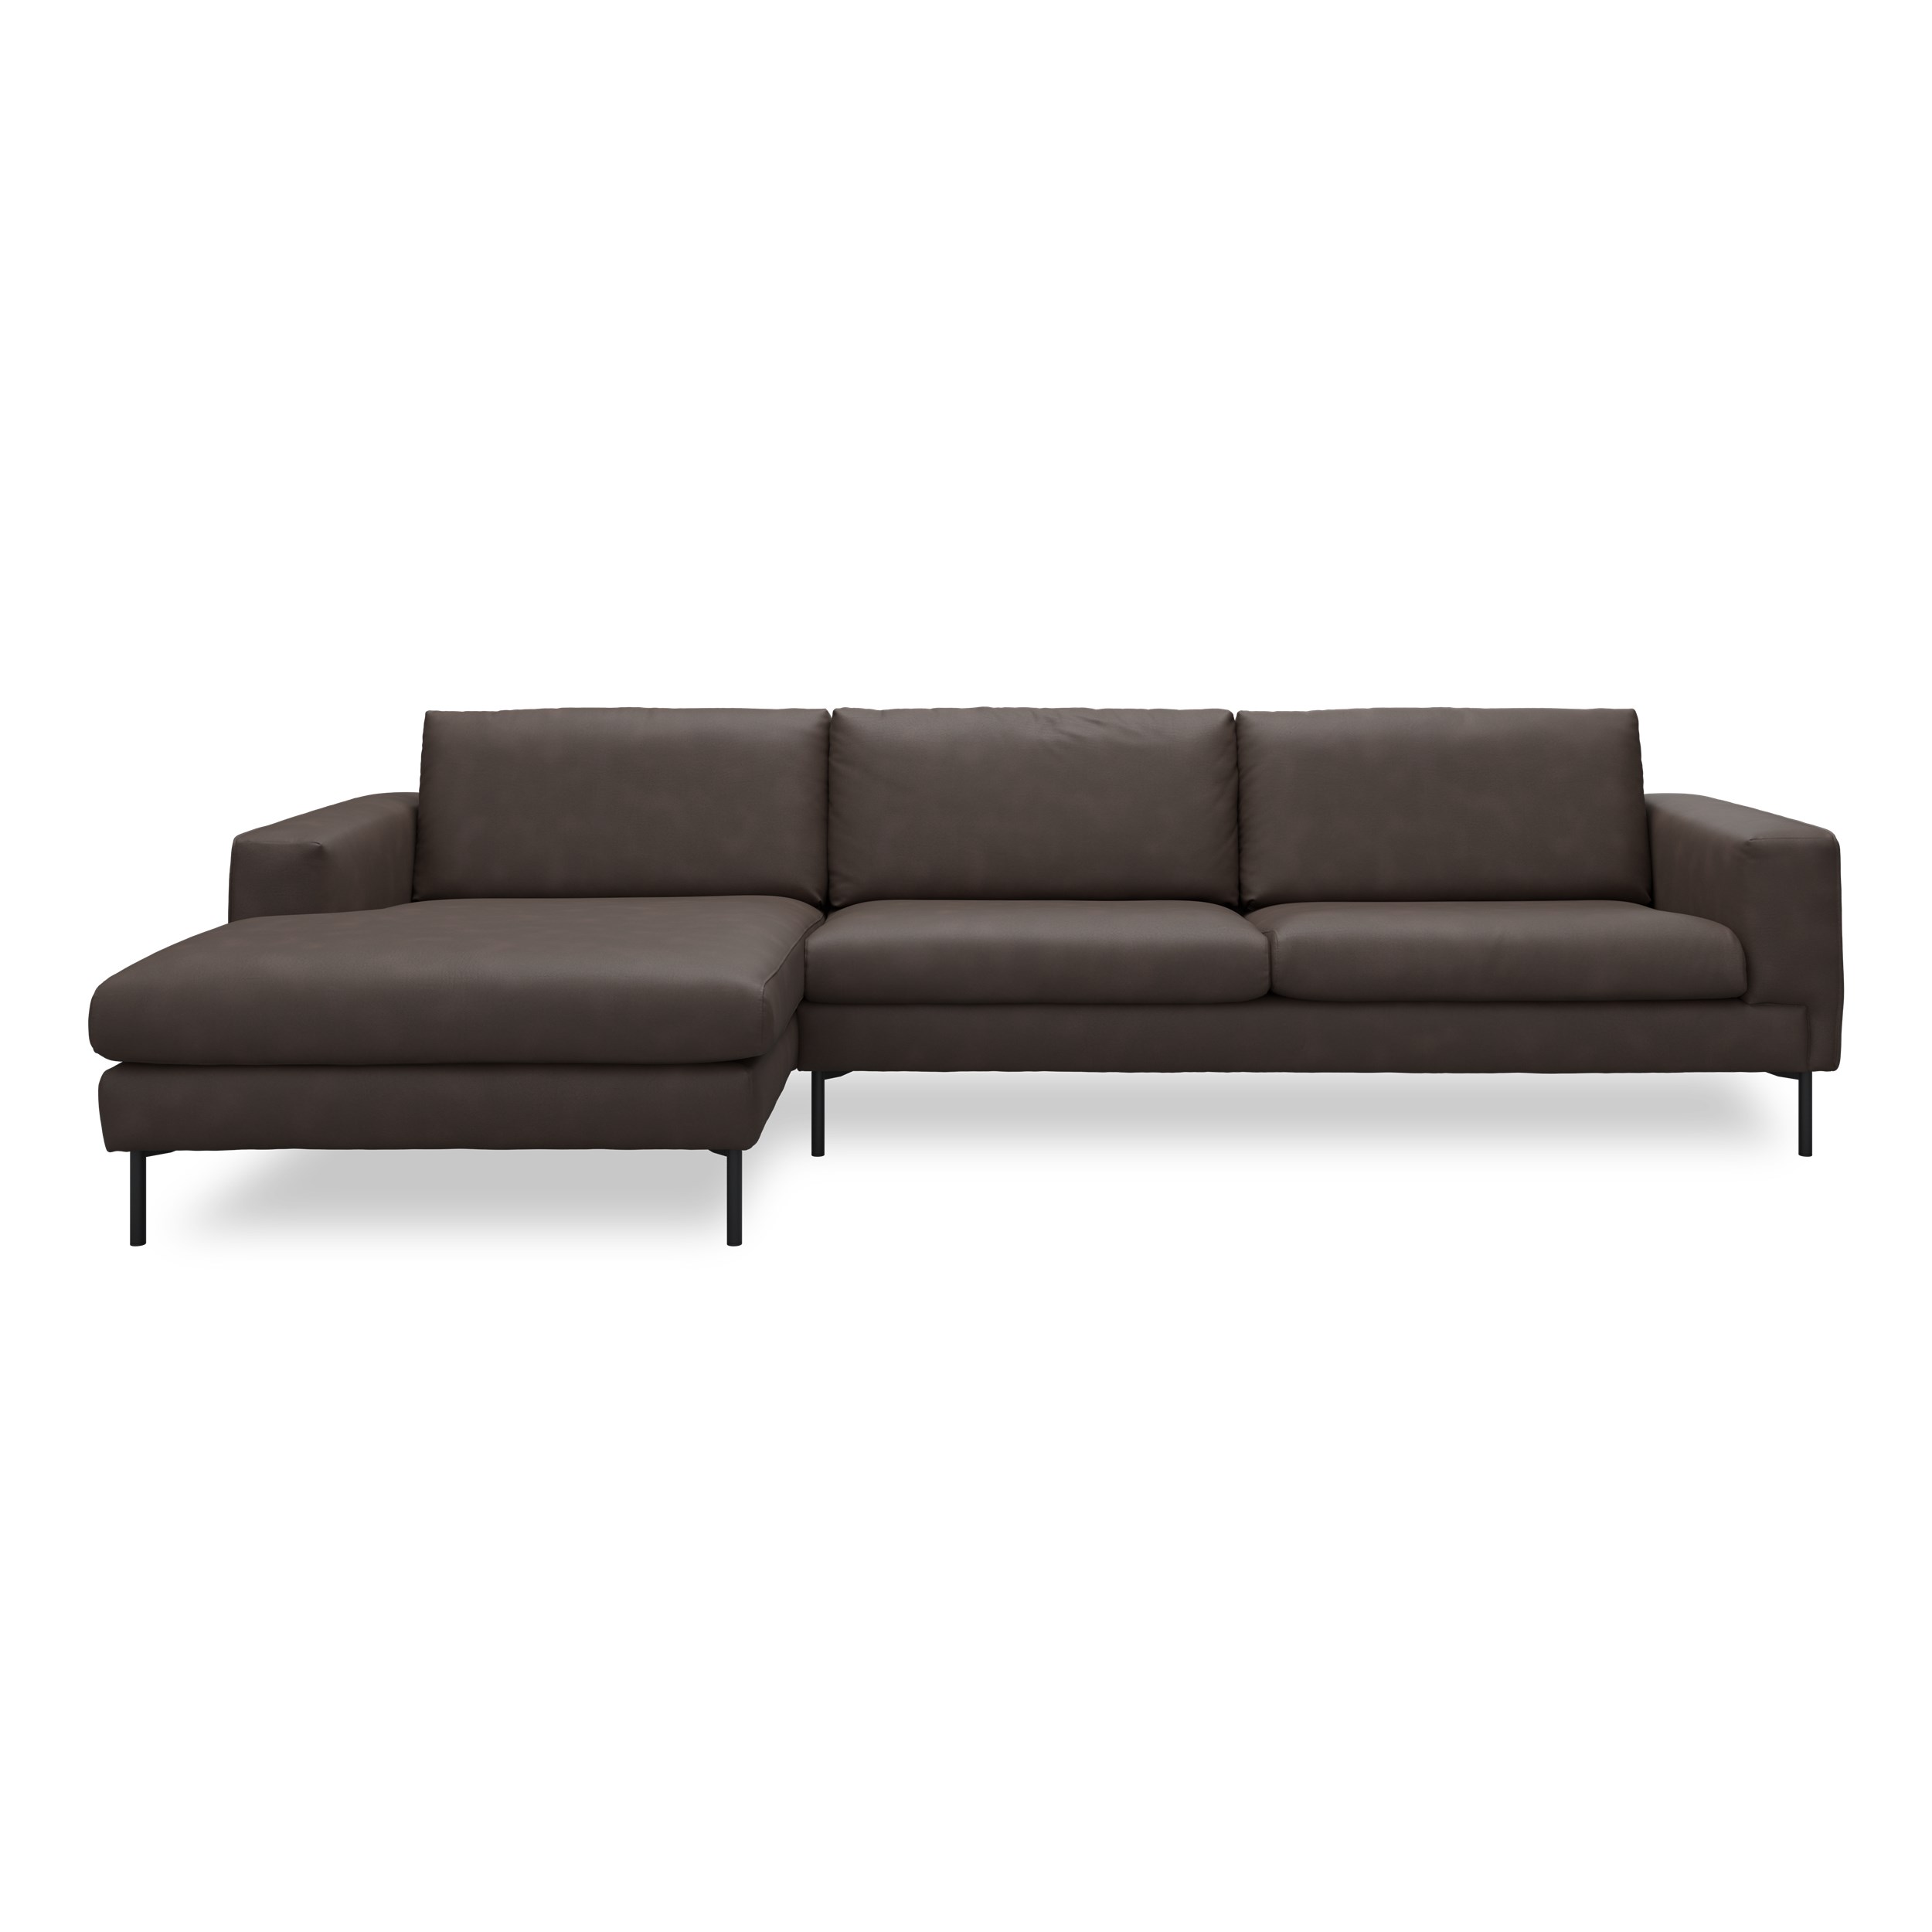 Nyland venstrevendt sofa med chaiselong - Kentucky 1 earth bonded læder, Ben no. 145 i sortlakeret metal og S: Koldskum R:Koldskum med fiberfyld